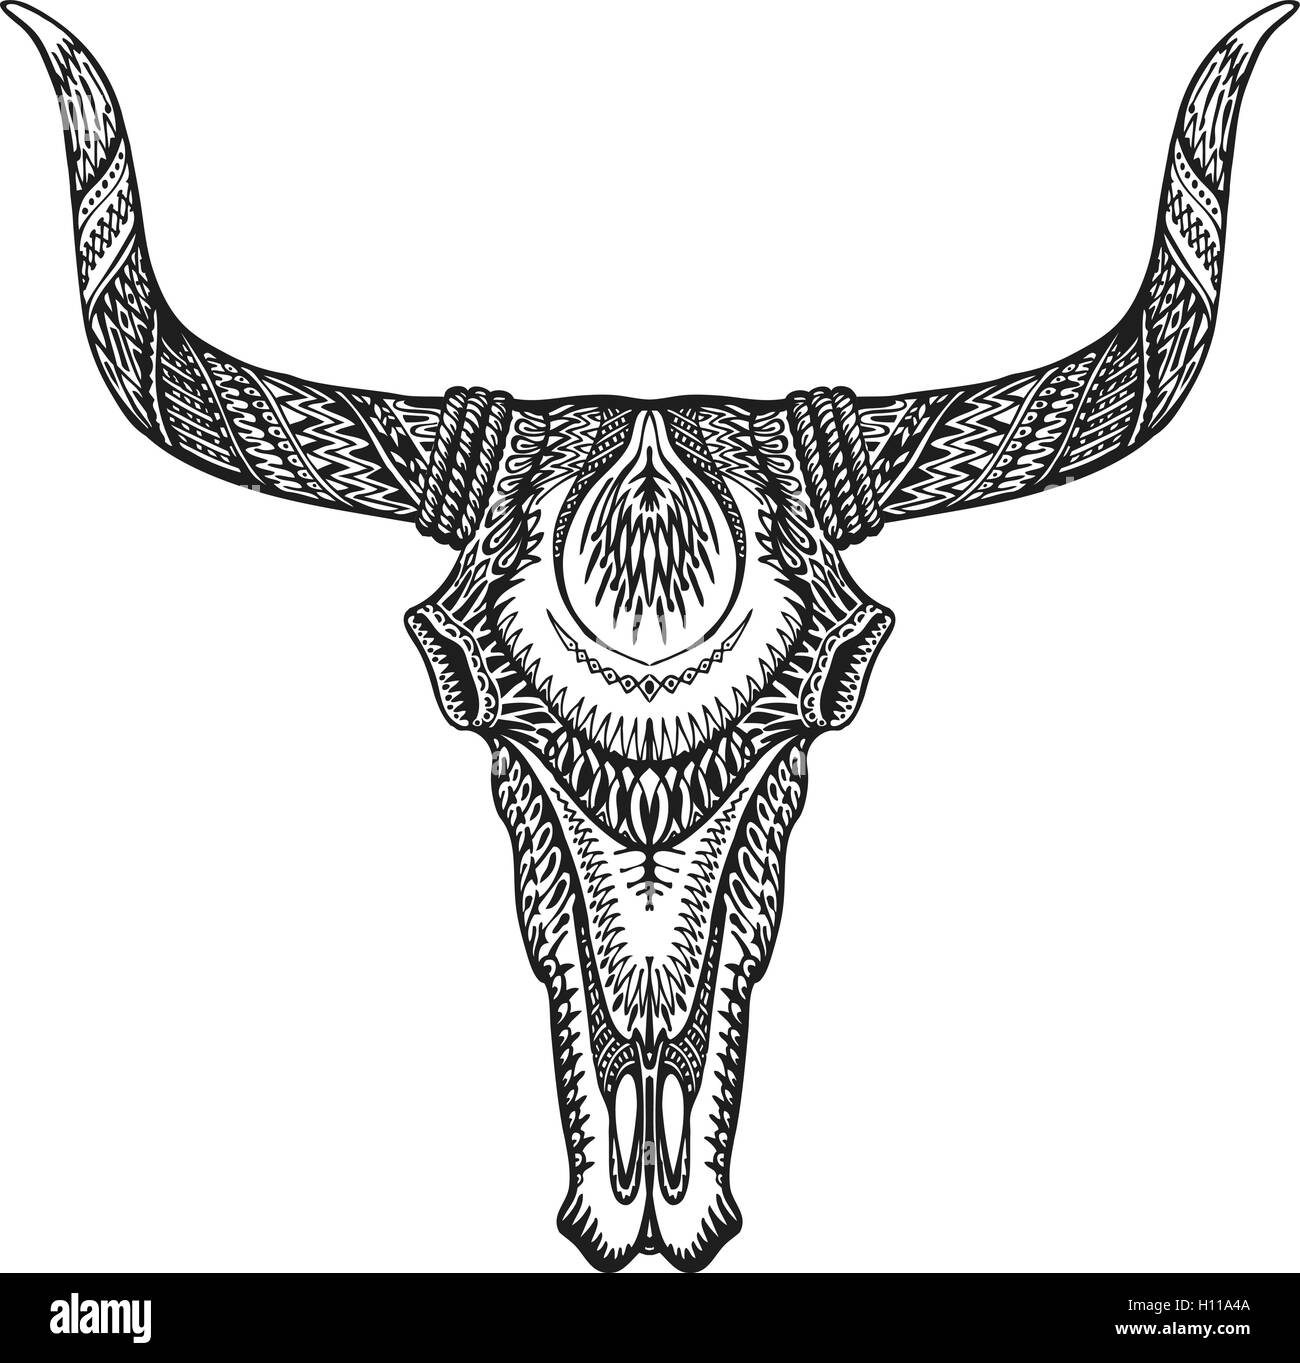 Tribal Bull Tattoo Stock Illustrations  1250 Tribal Bull Tattoo Stock  Illustrations Vectors  Clipart  Dreamstime